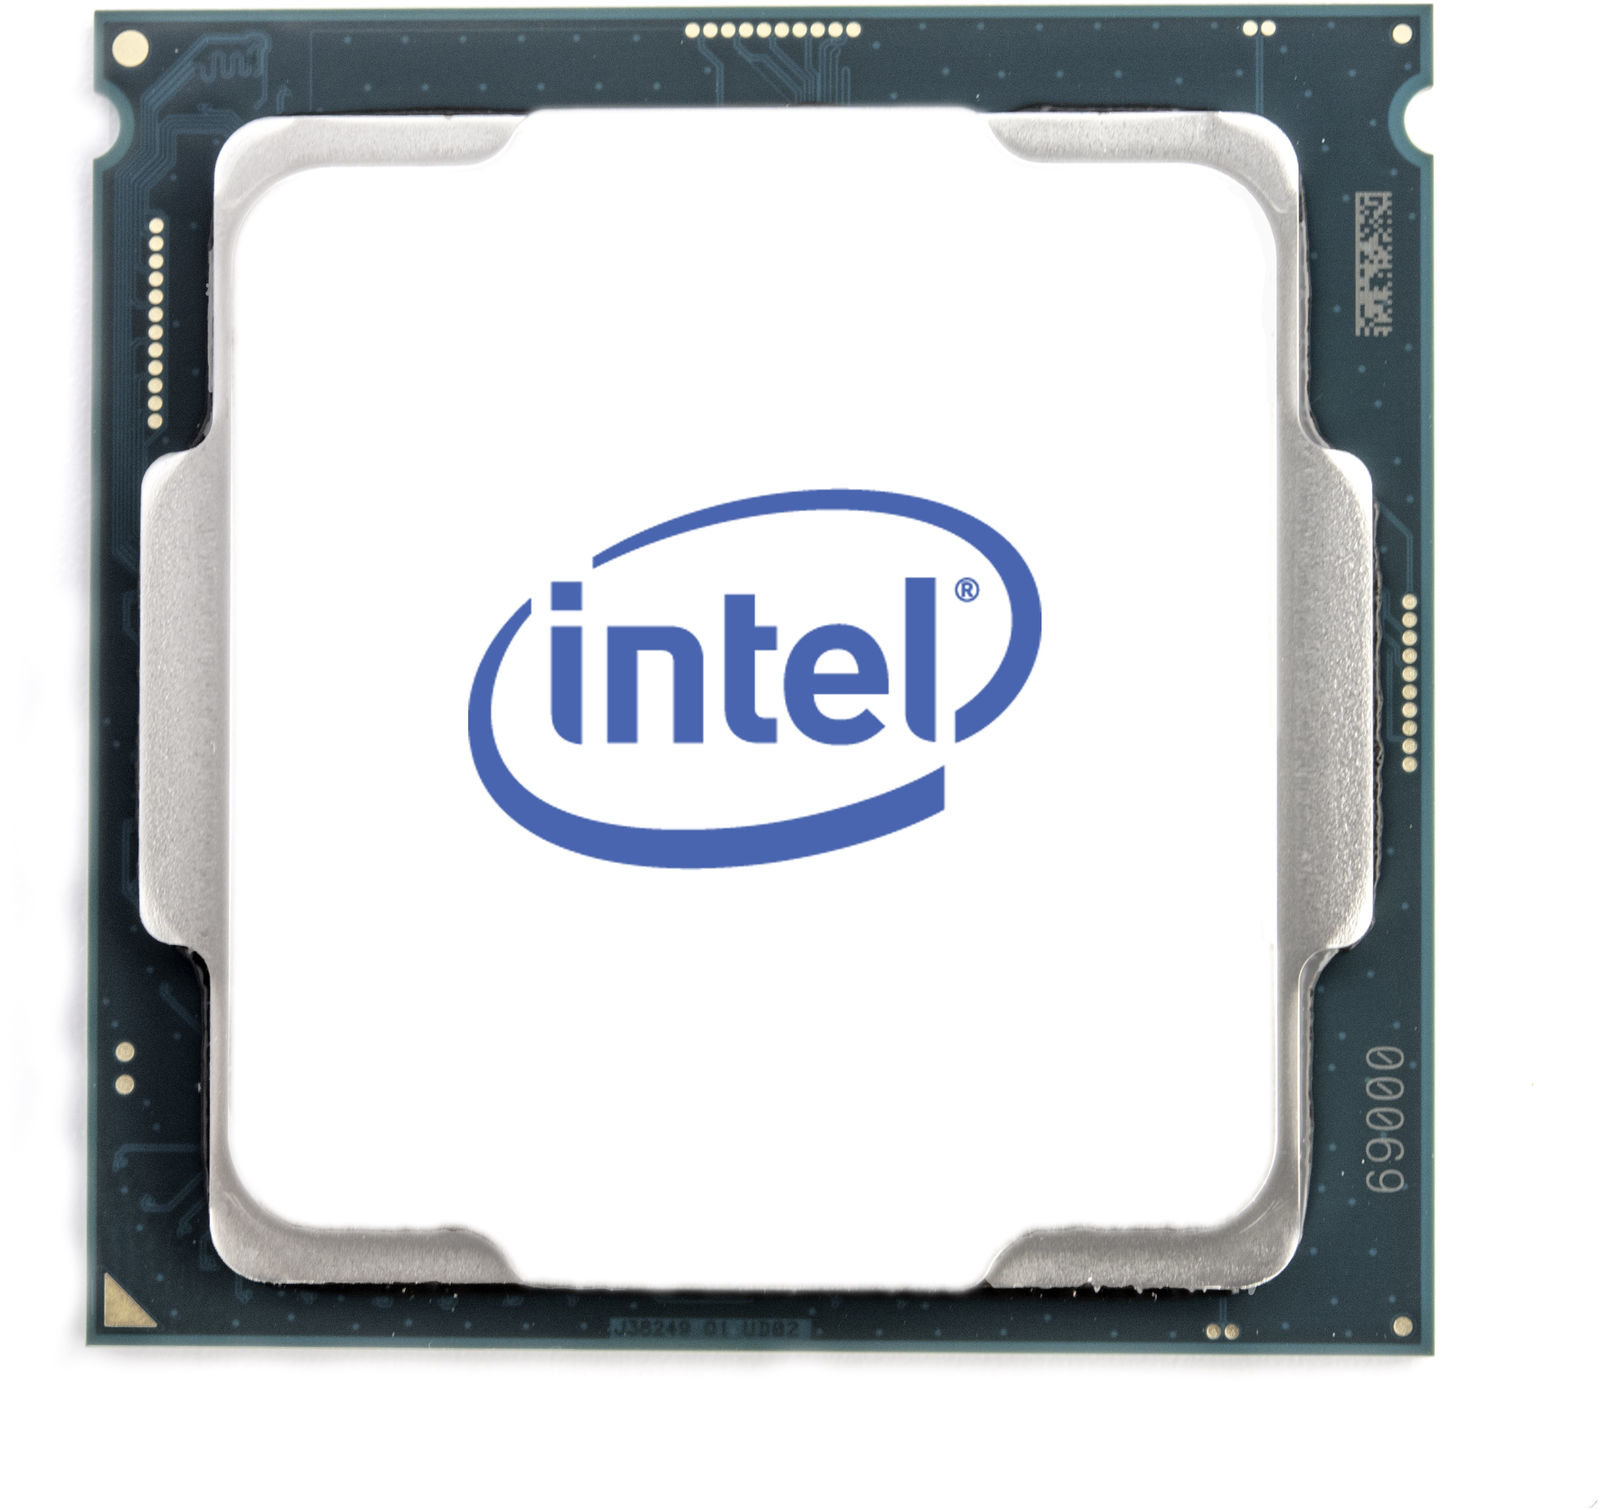 INTEL 6-core Xeon E-2286G 4.0GHZ/12MB/FCLGA1151/95W